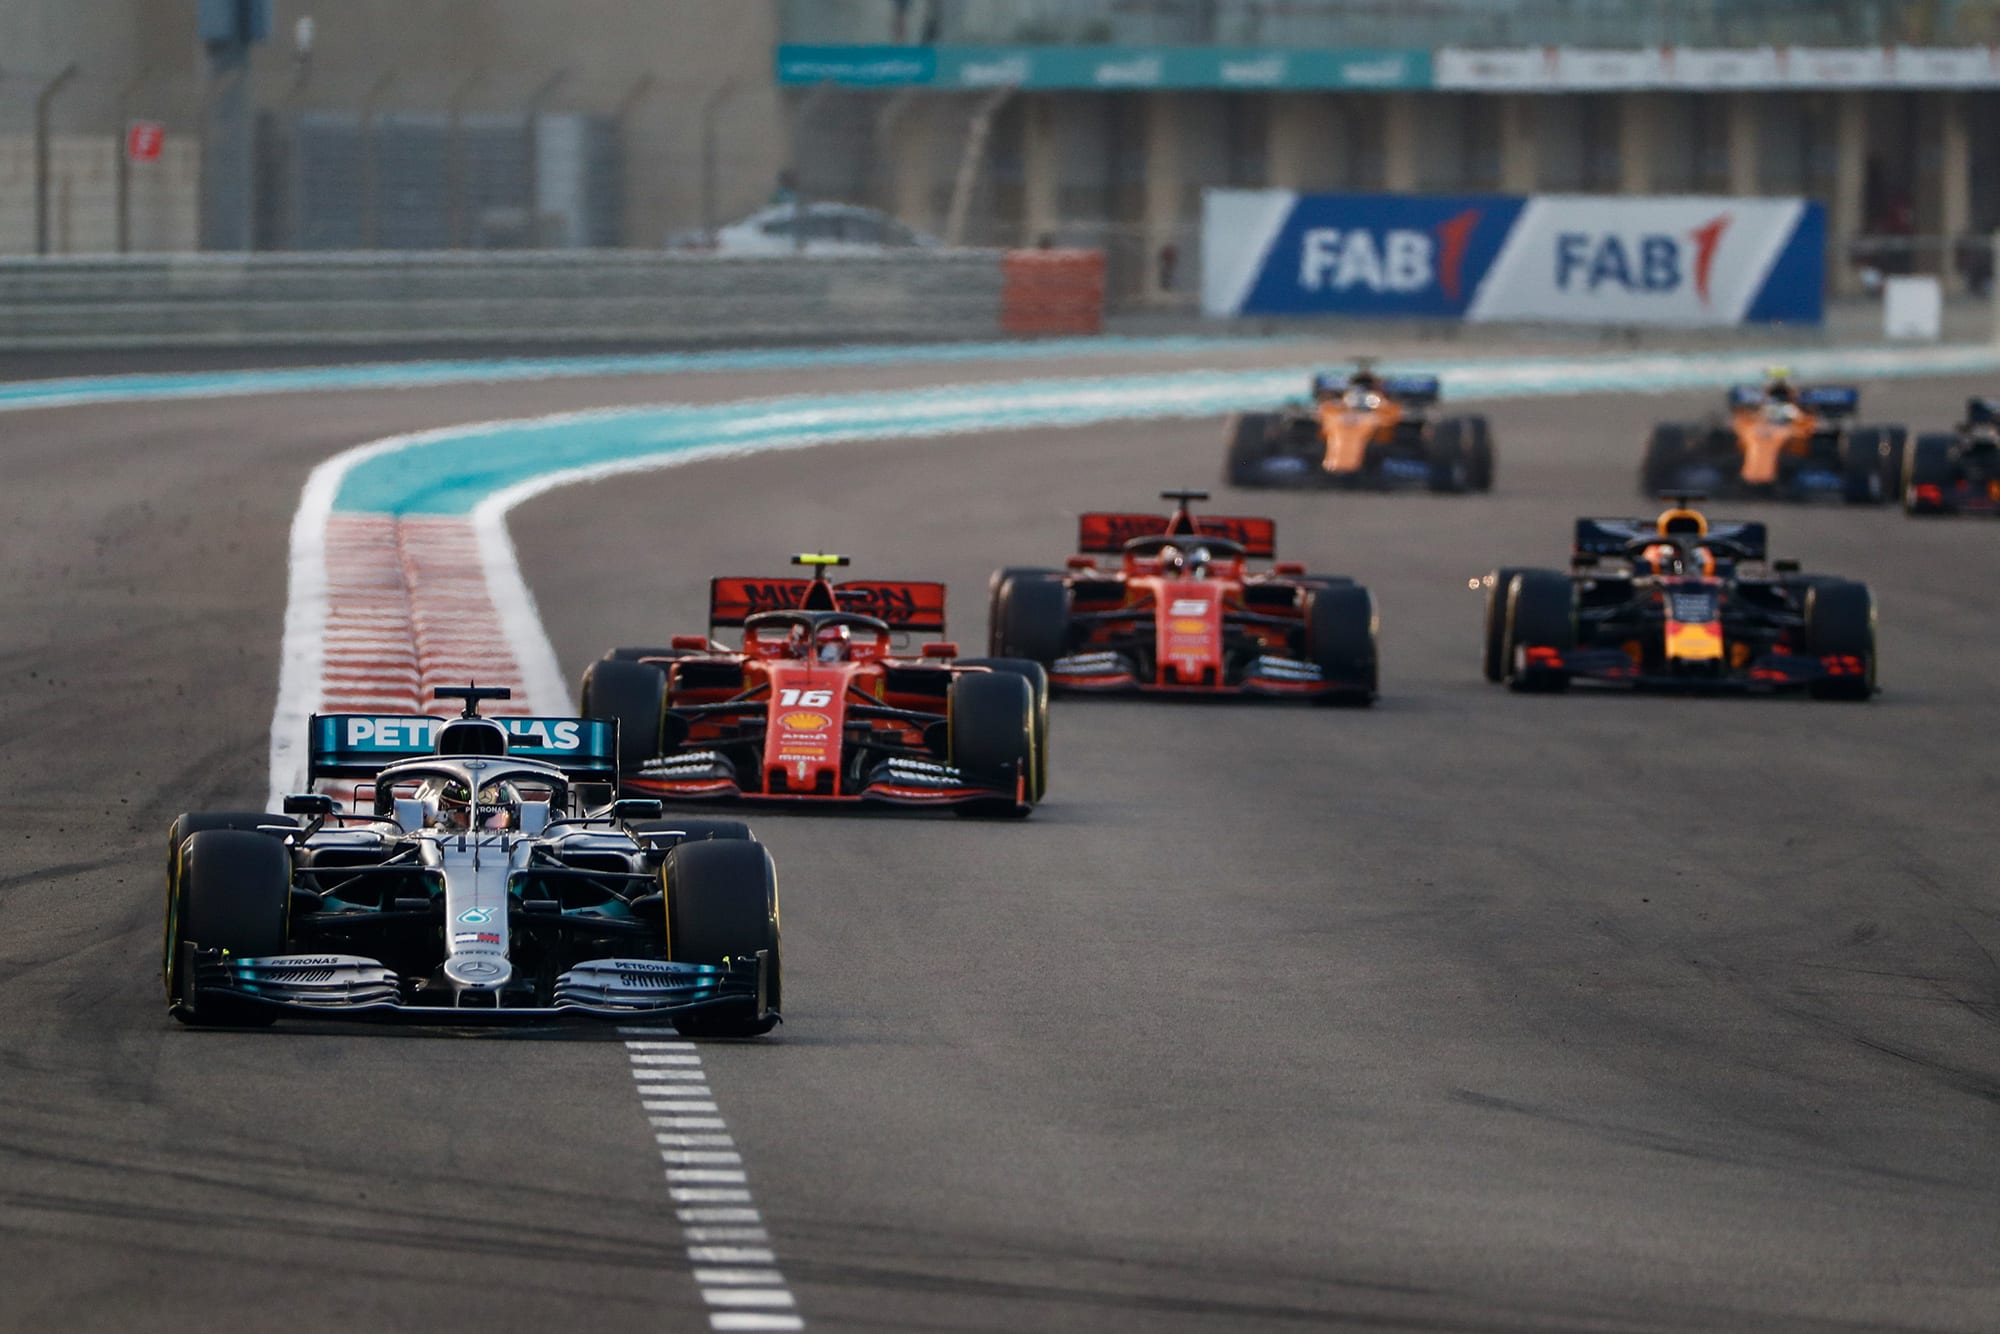 Max Verstappen defends against Sebastian Vettel on the first lap of the 2019 Abu Dhabi Grand Prix